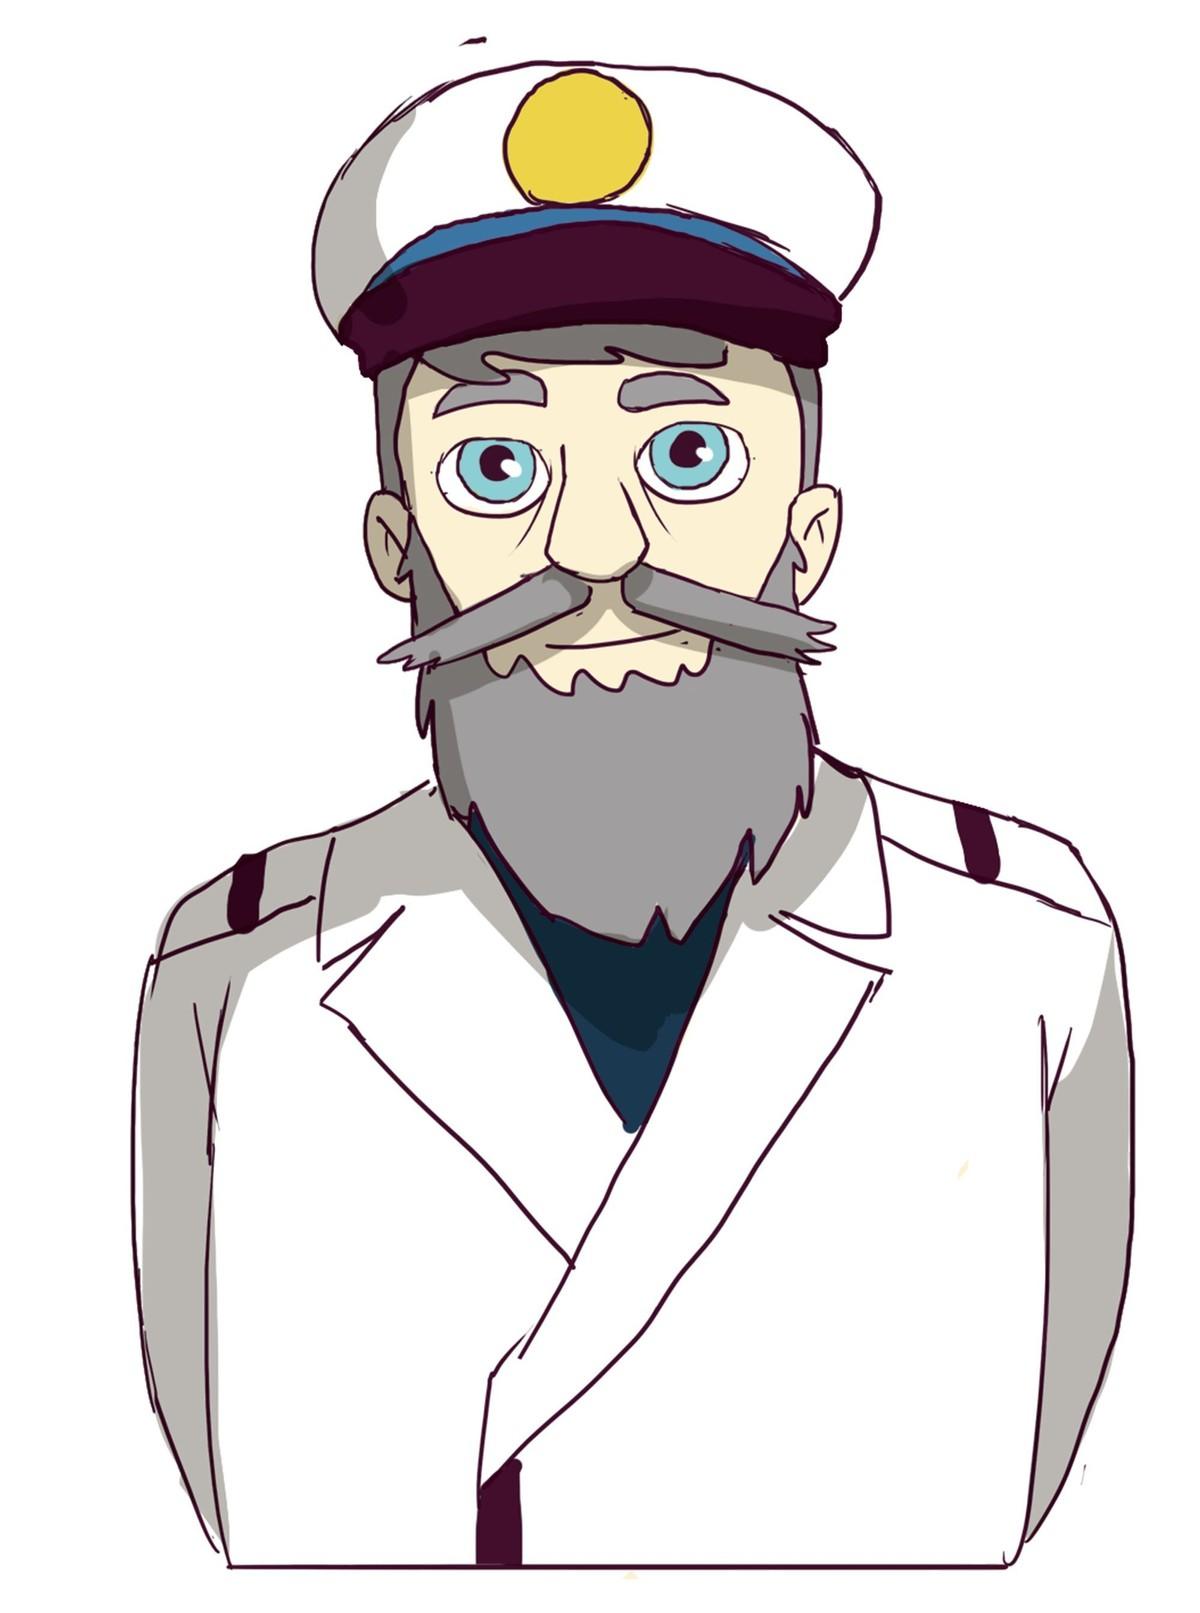 A captain with a grey beard